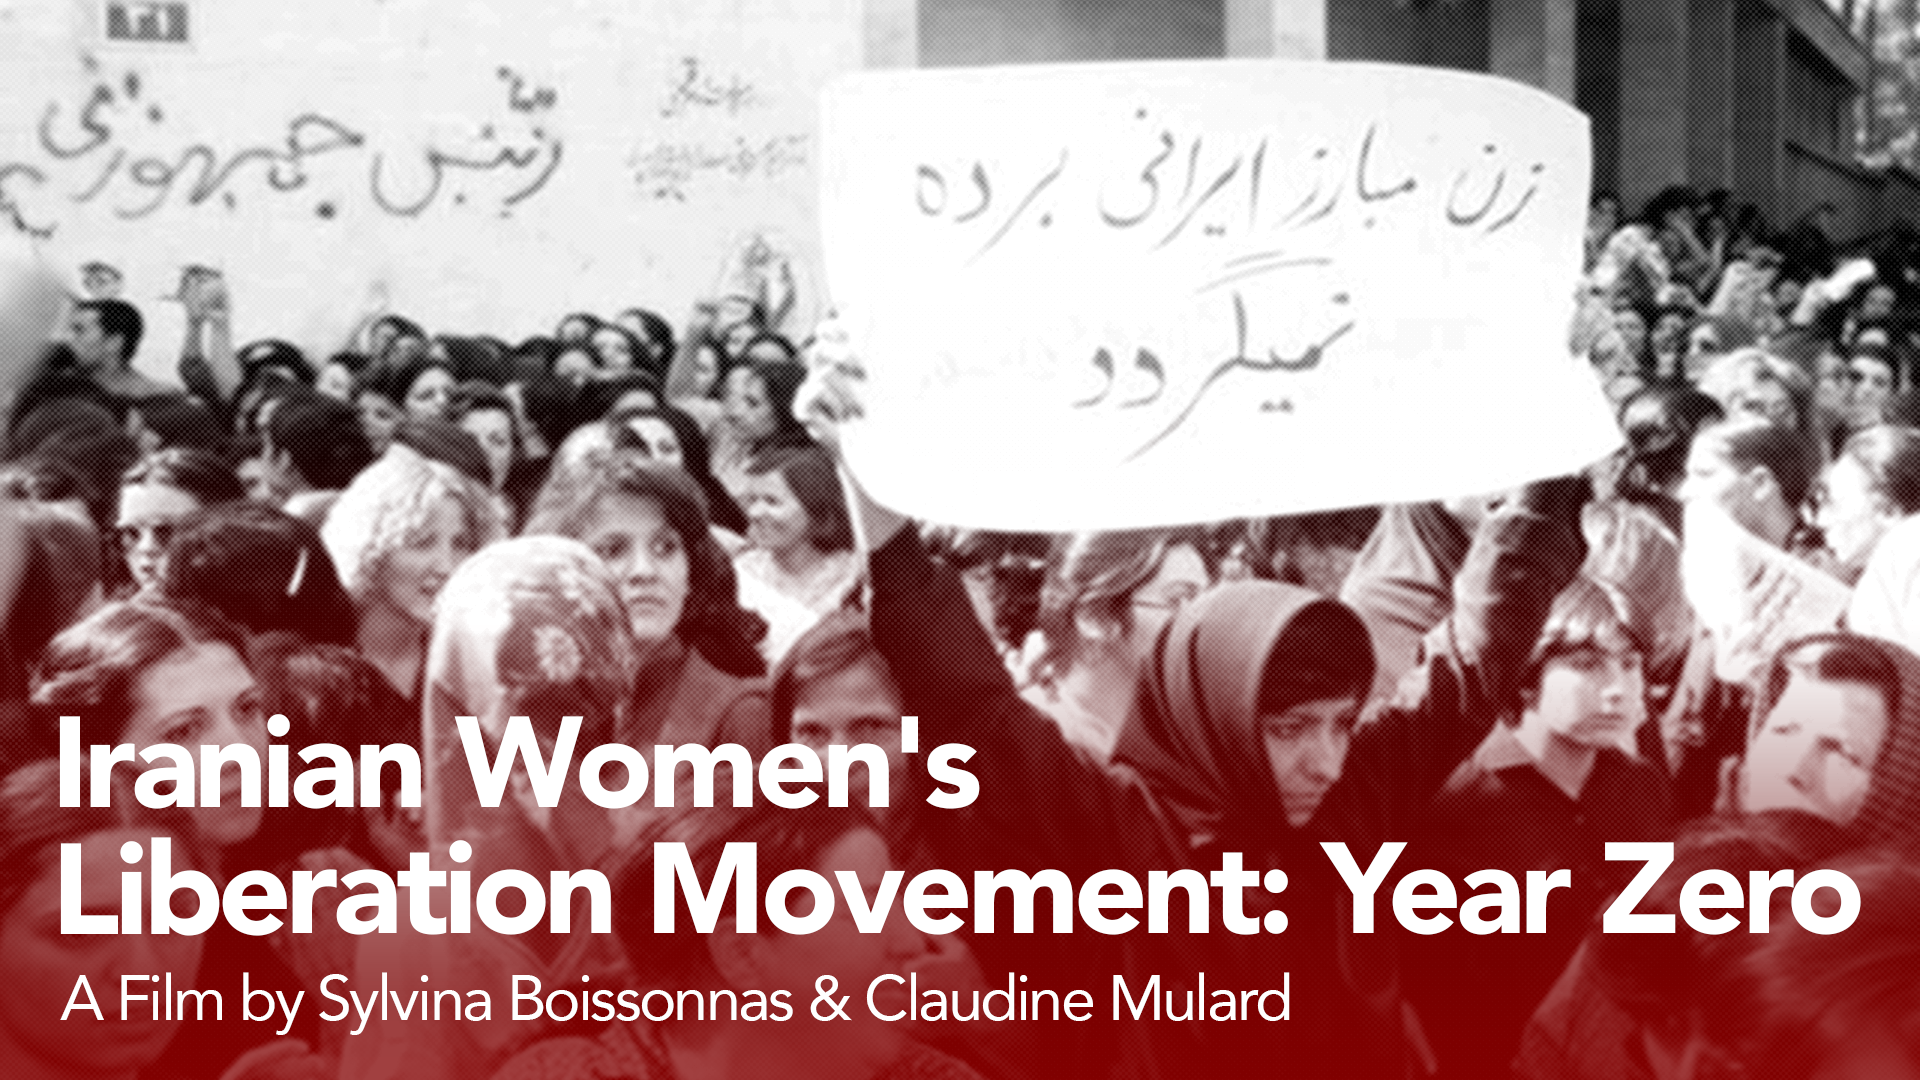 Iranian Women’s Liberation Movement: Year Zero (1979)